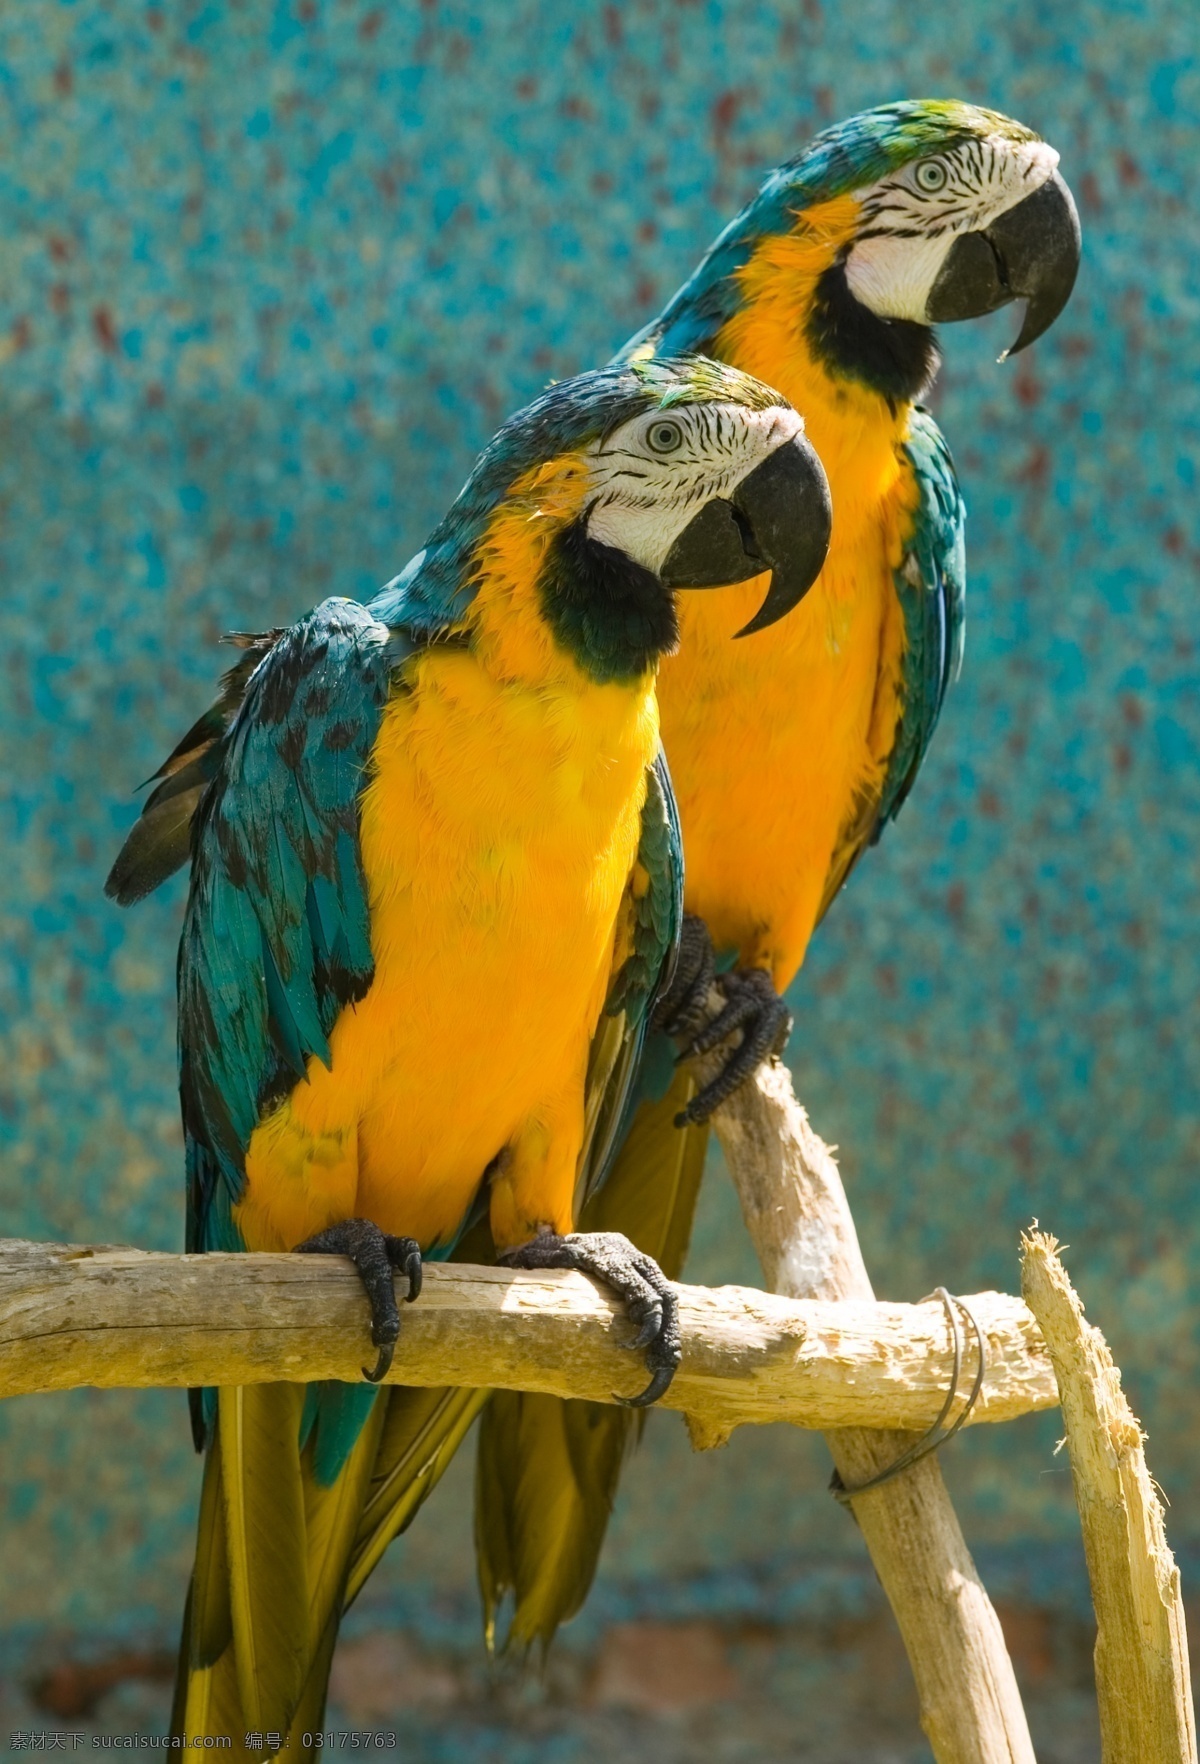 彩色 翅膀 动物 黄色 木架 鸟 鸟类 漂亮 鹦鹉 眼睛 婷婷玉立 生物世界 psd源文件